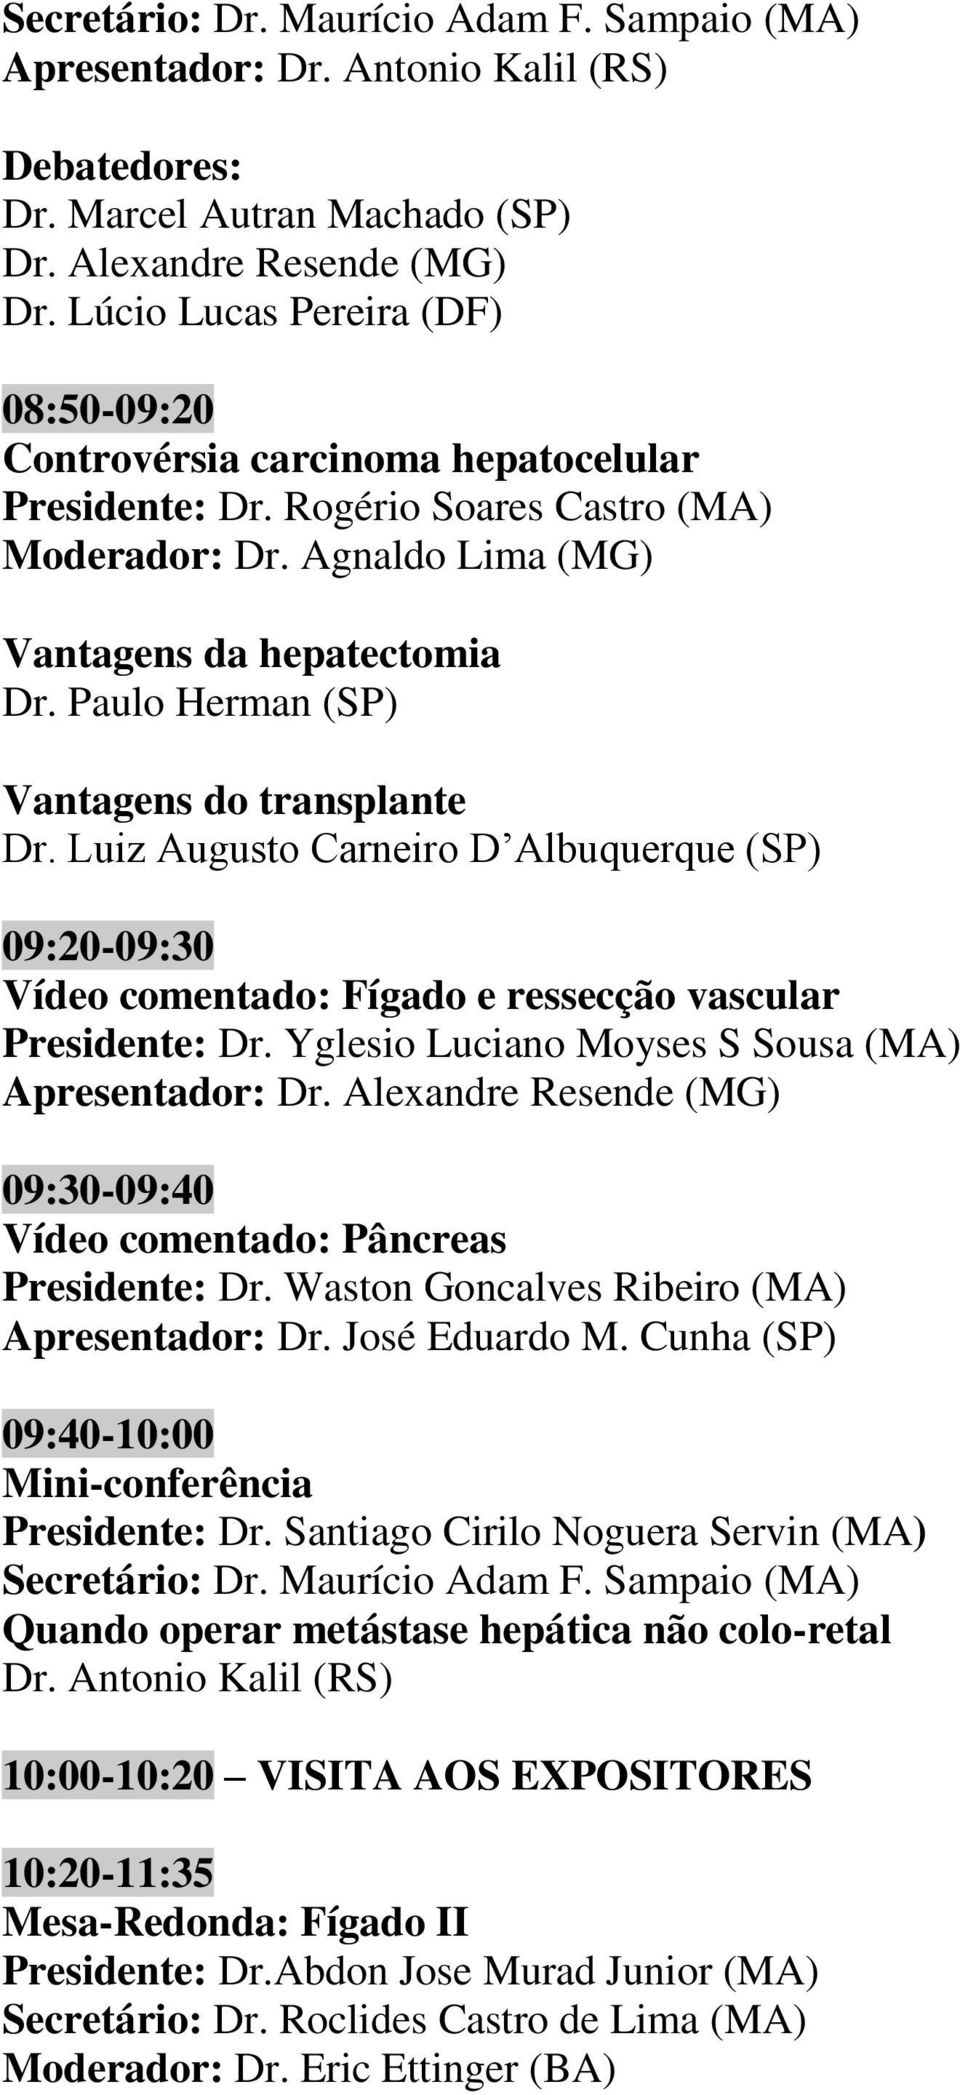 Paulo Herman (SP) Vantagens do transplante Dr. Luiz Augusto Carneiro D Albuquerque (SP) 09:20-09:30 Vídeo comentado: Fígado e ressecção vascular Presidente: Dr.